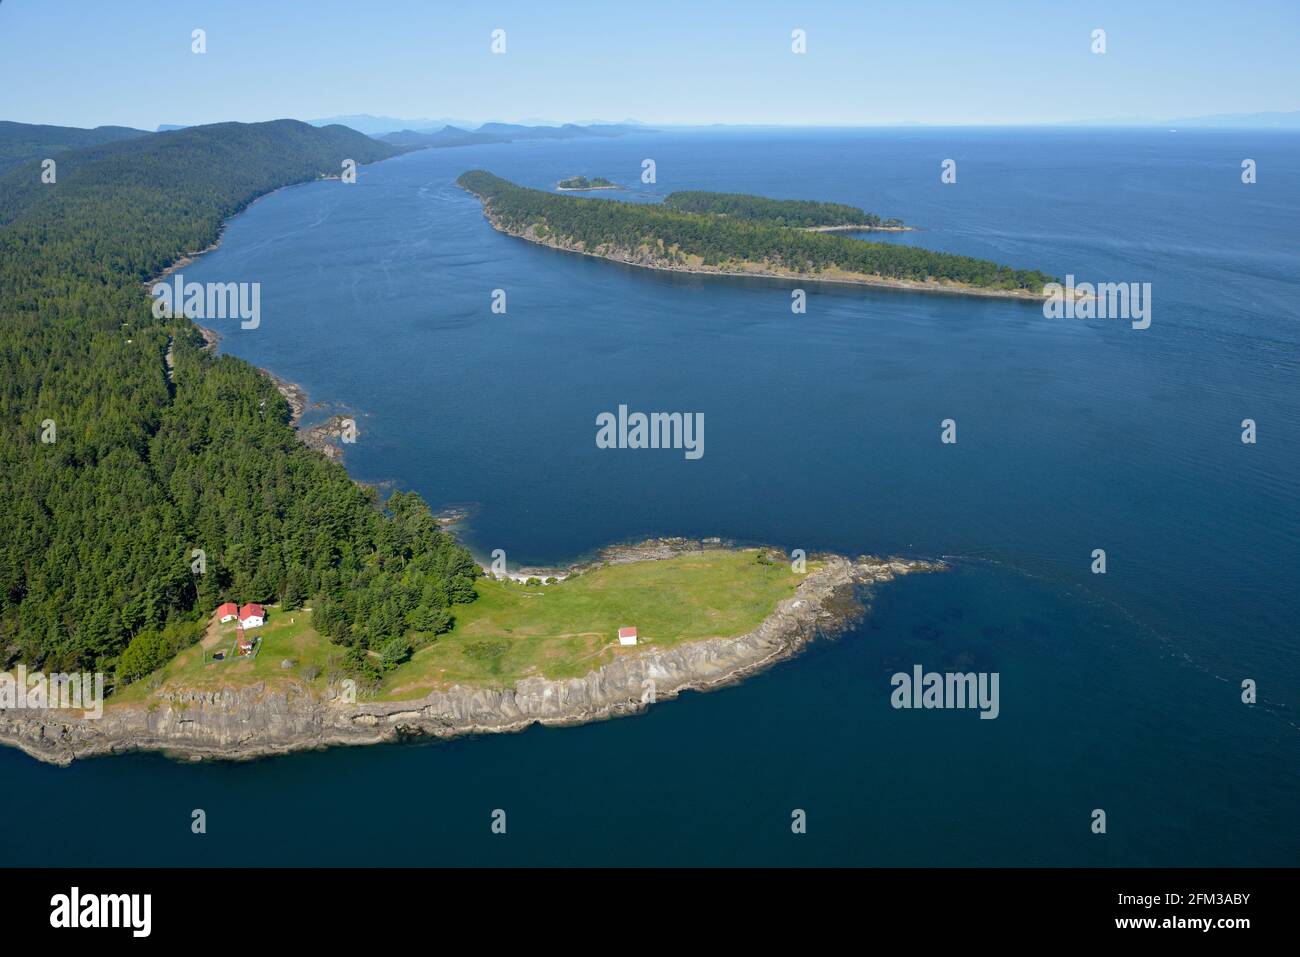 East point sur l'île Saturna avec l'île Cabbage et l'île Tumbo en arrière-plan, la réserve de parc national du Canada des îles Gulf, l'île Saturna. BRI Banque D'Images